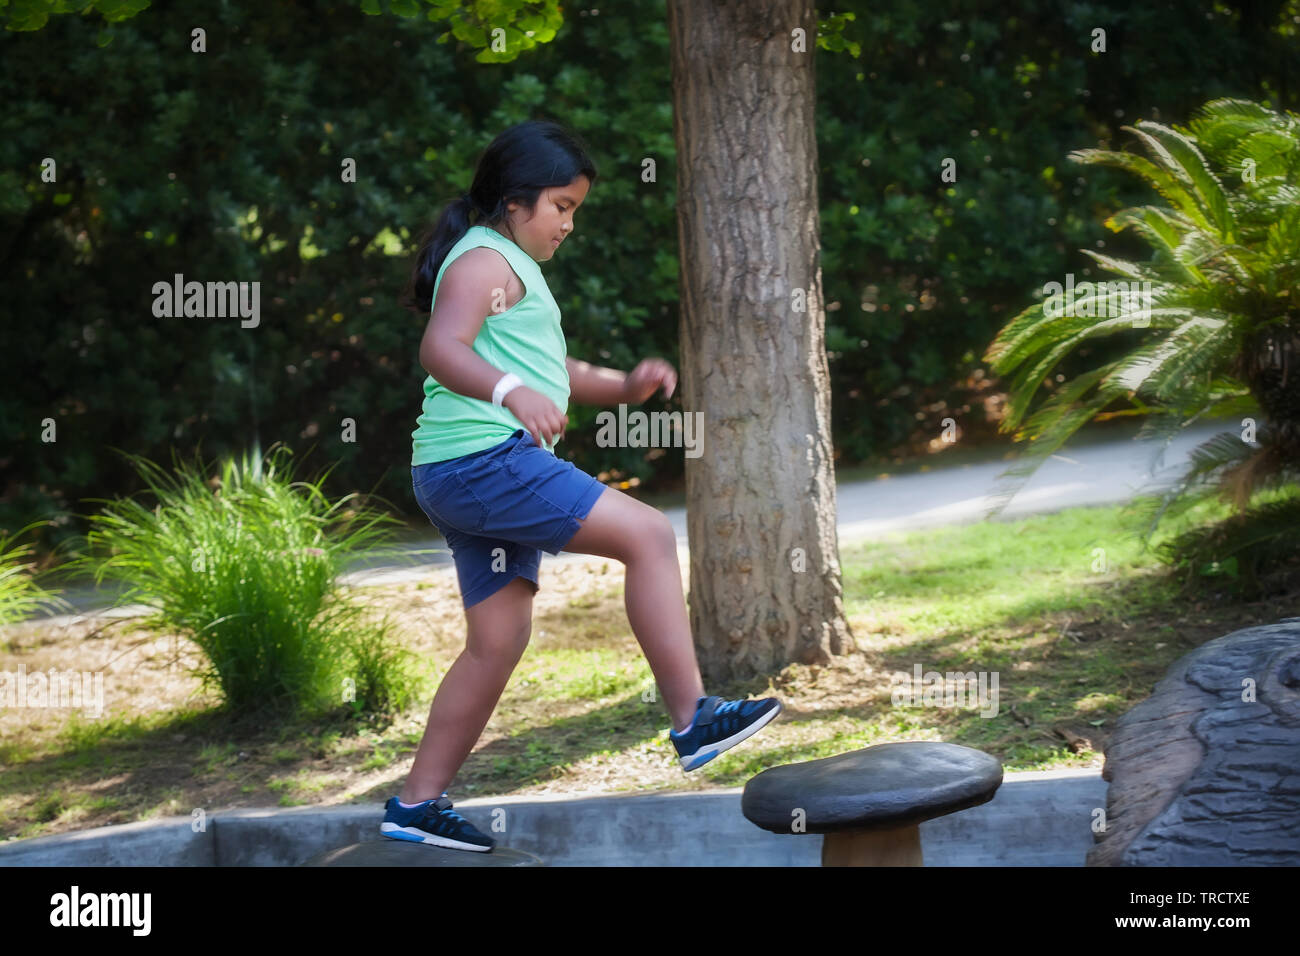 Pre Teen Girl Jumping von einem Schritt zum nächsten an einem Kinderspielplatz, körperliche Aktivität zu tun, die ihr Gleichgewicht entwickelt. Stockfoto